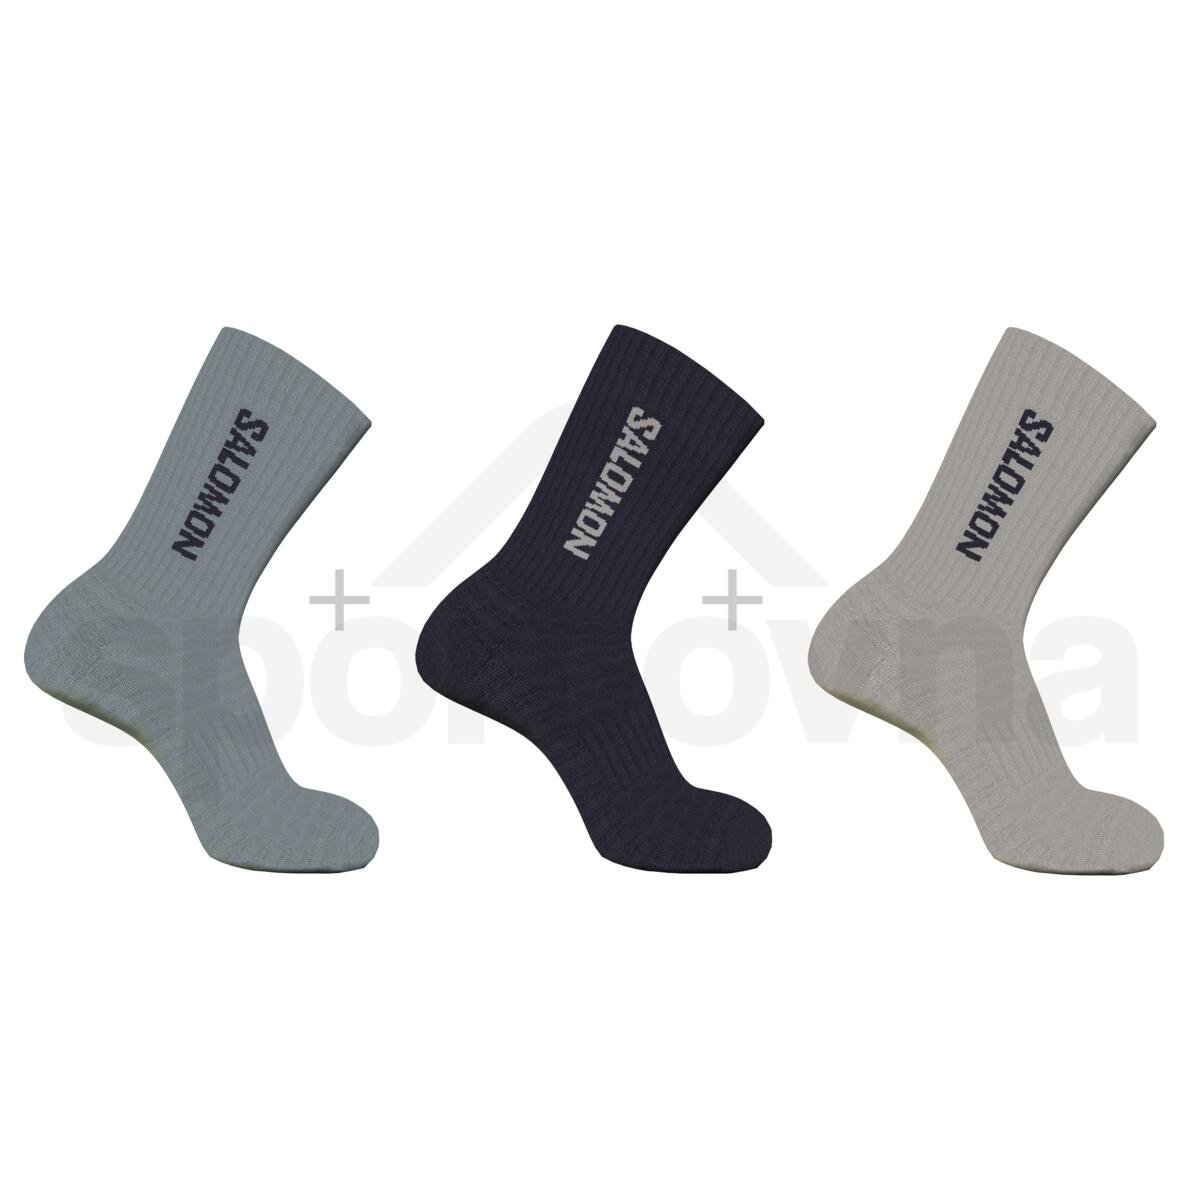 Ponožky Salomon Everyday Crew 3-Pack - černá/šedá